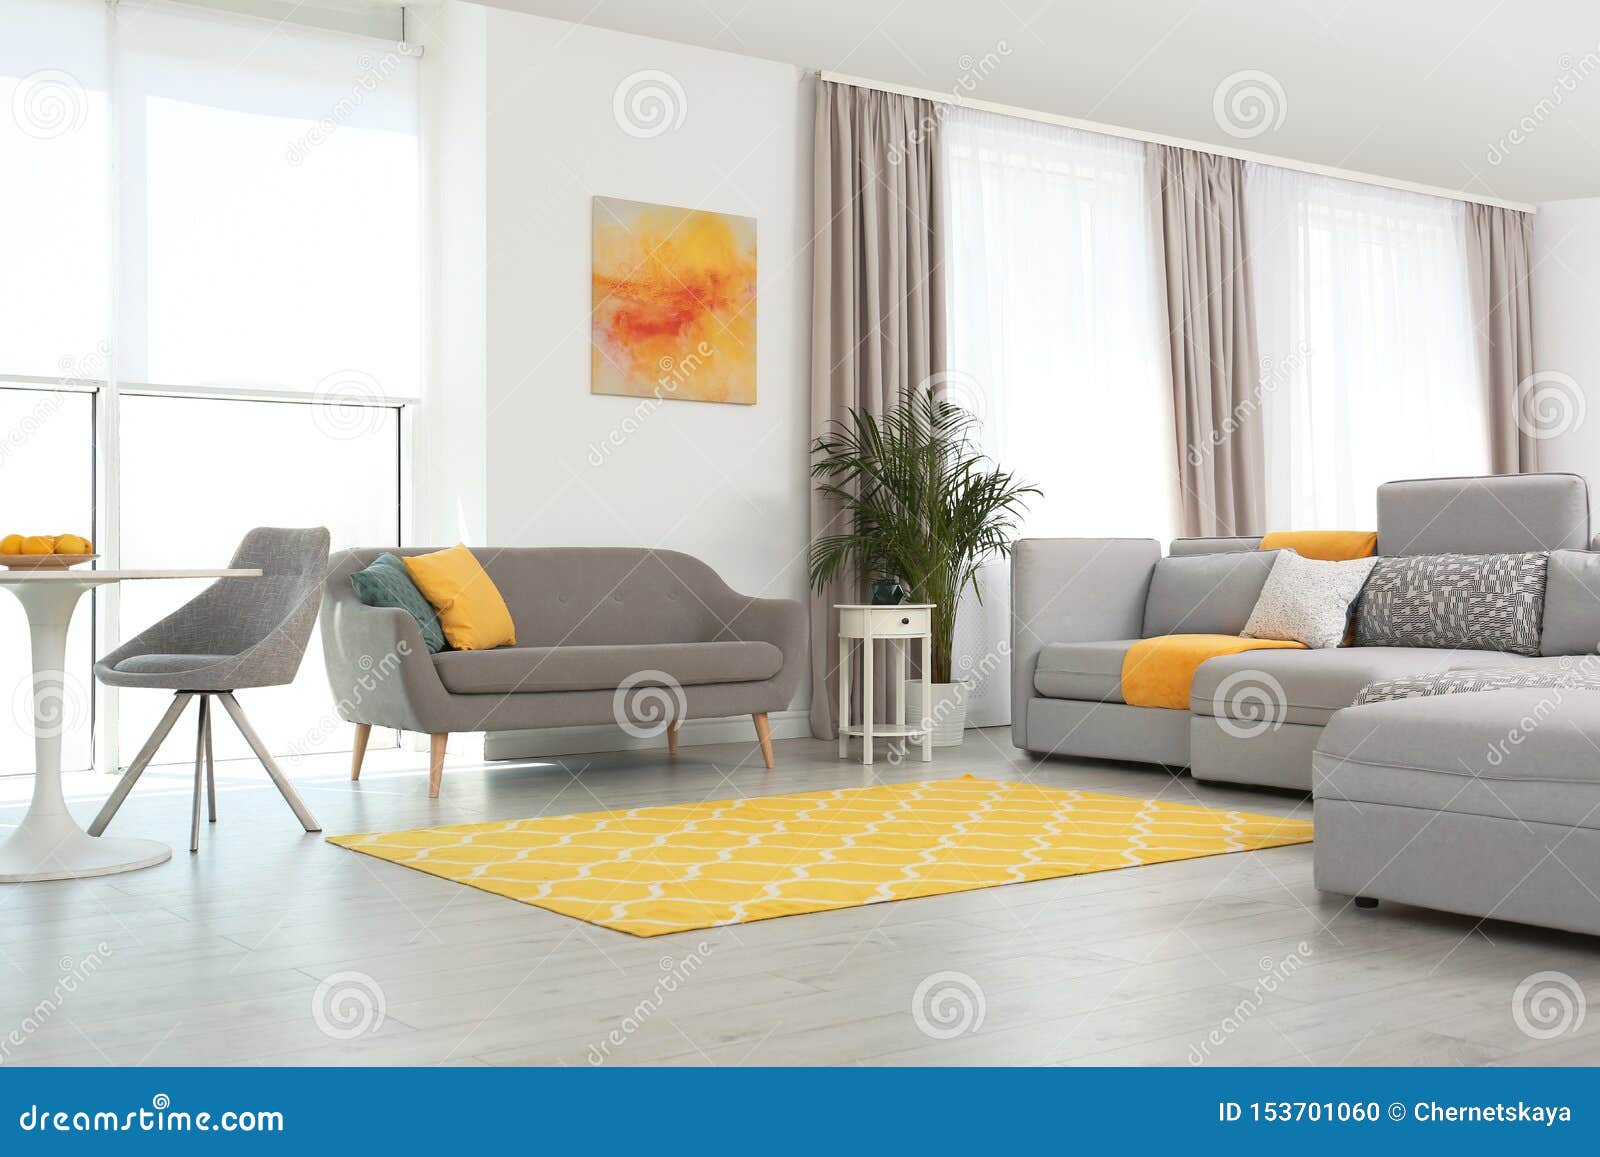 Sala De Estar Con Muebles Y Decoración Modernos Ideas Del Color Para El Interior Foto de archivo - Imagen planta, acogedor: 153701060